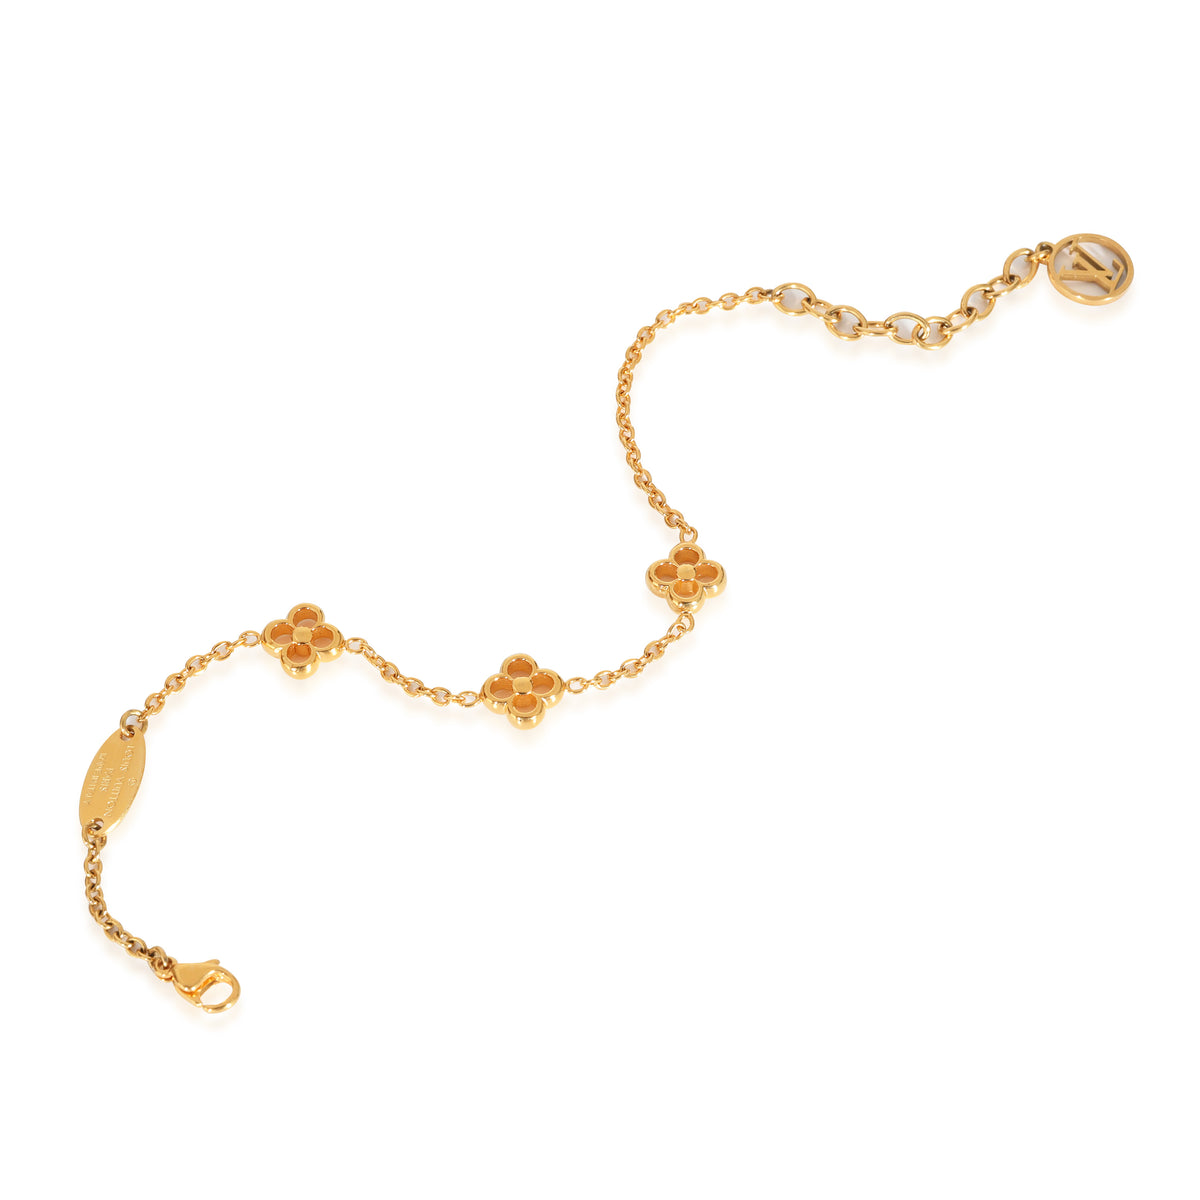 Louis Vuitton Flower Motif Gold Tone Station Bracelet